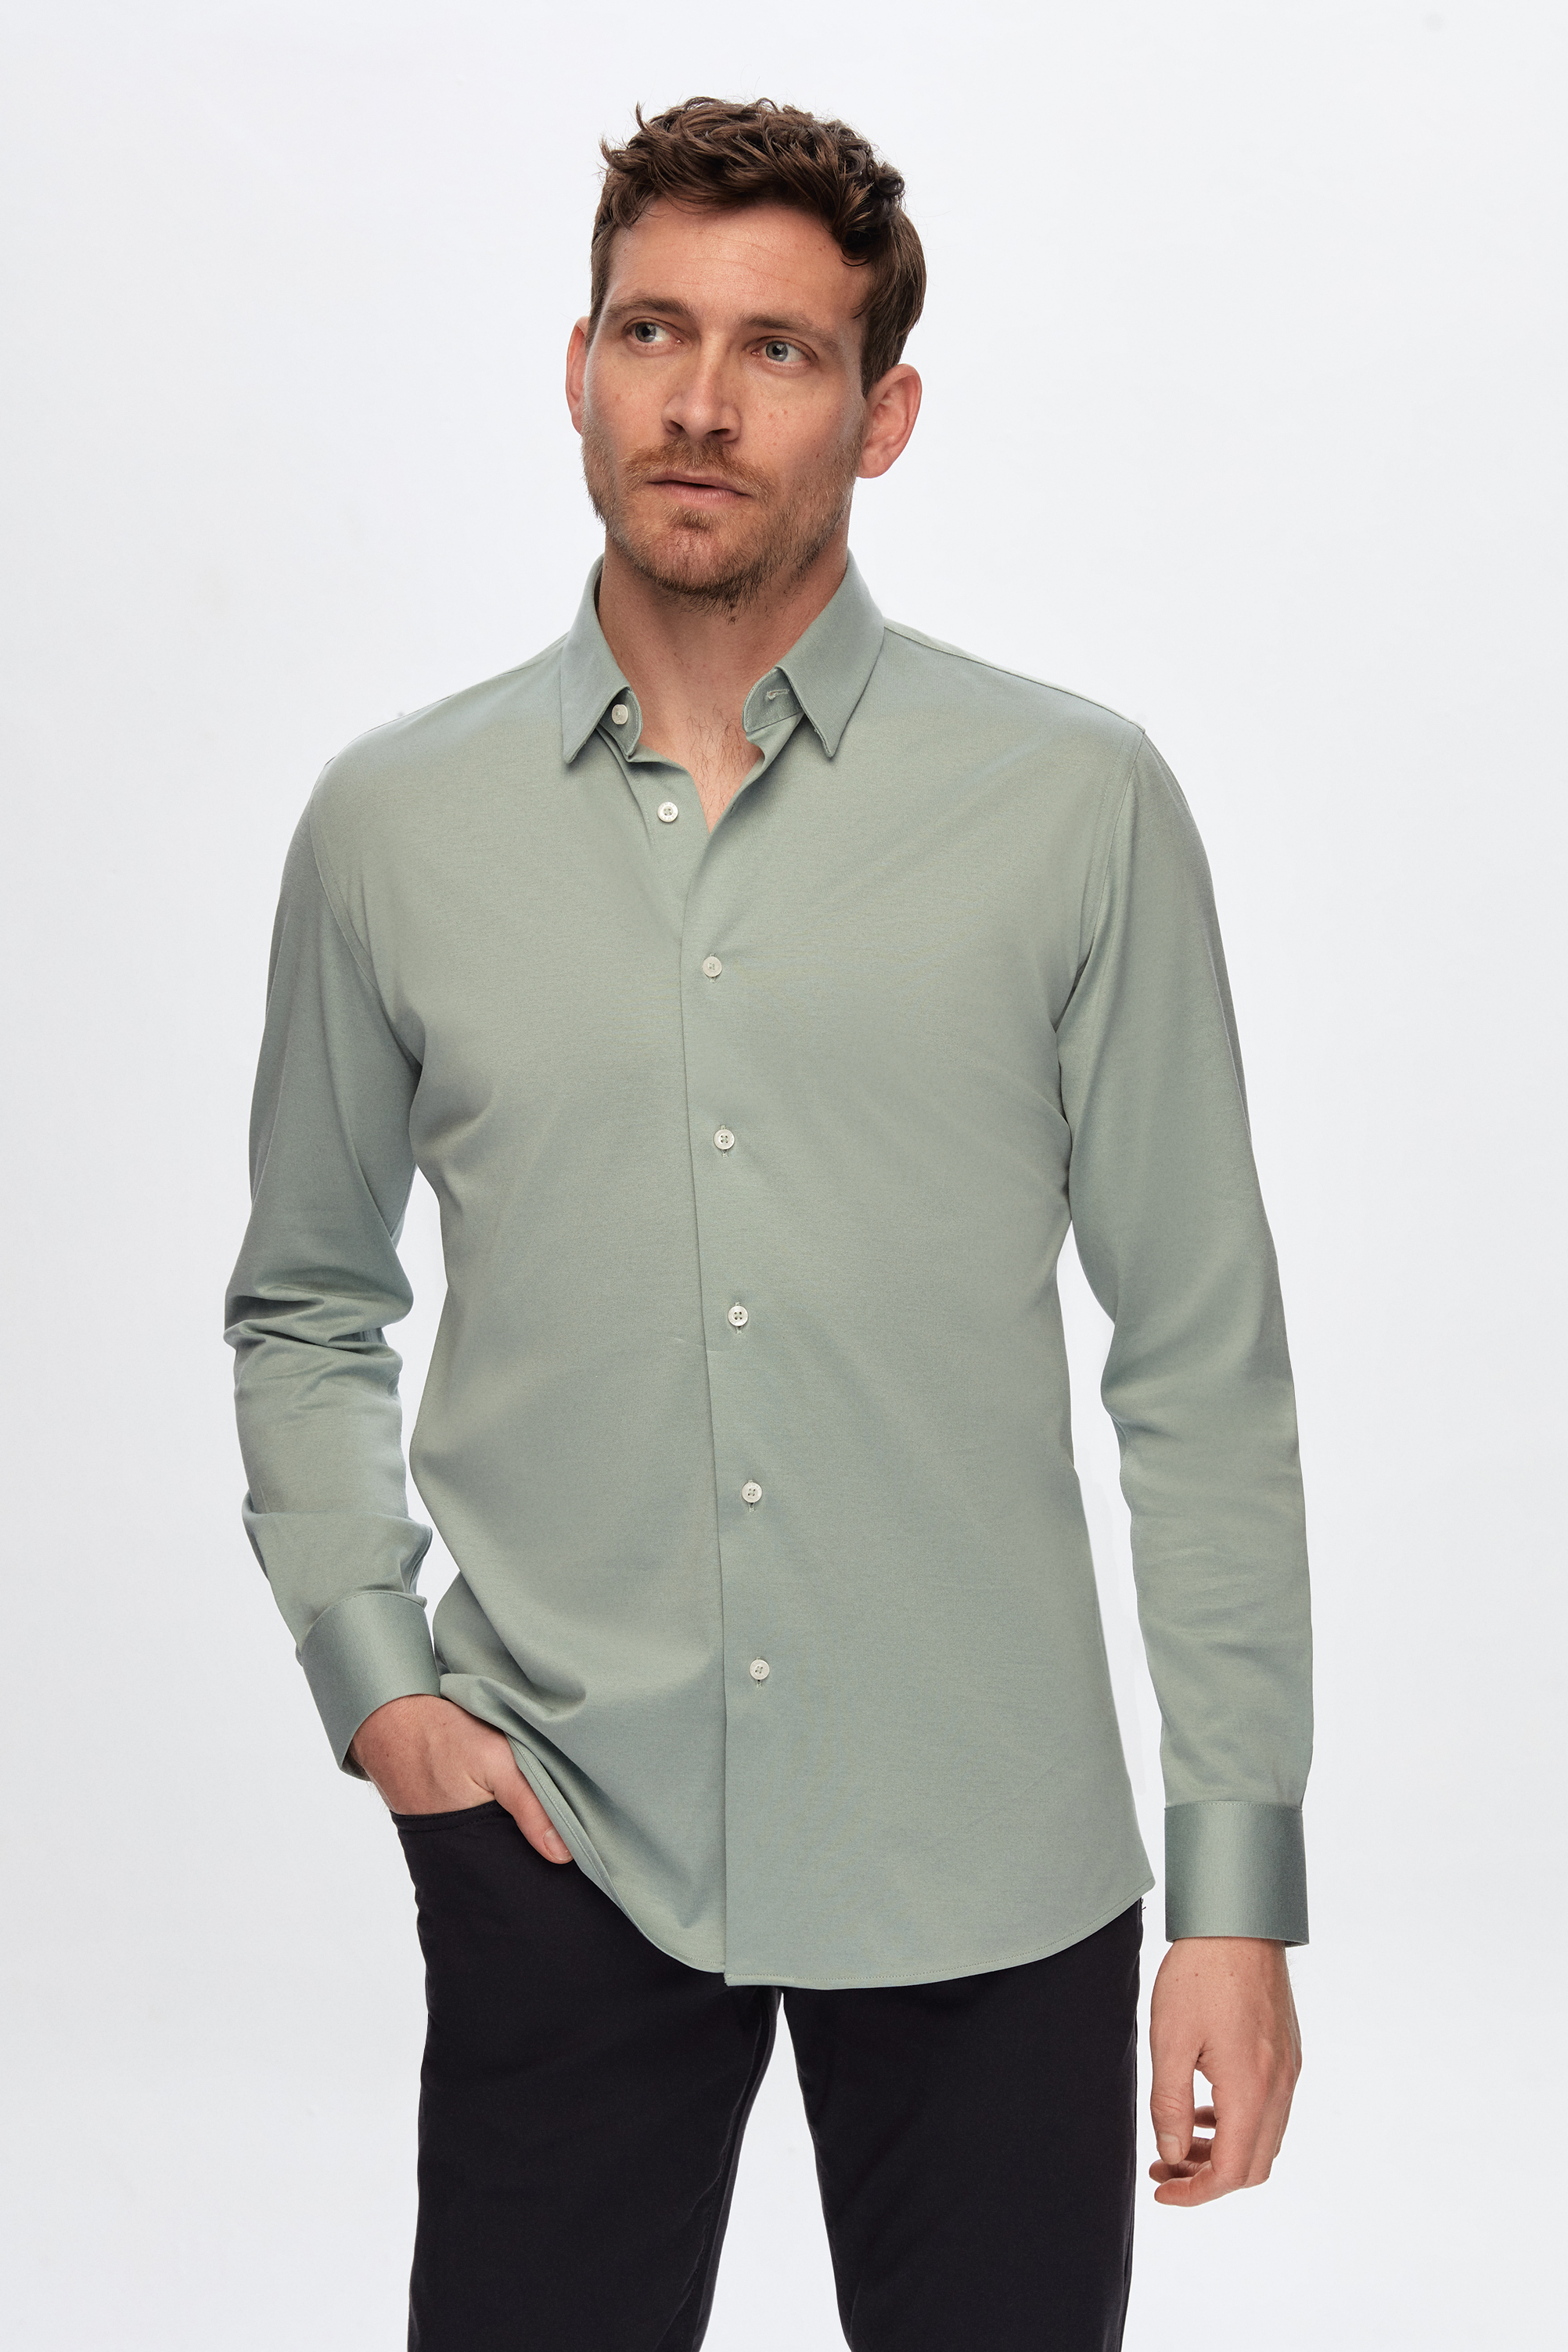 Damat Tween Damat Slim Fit Yeşil Düz %100 Pamuk Süprem Gömlek. 1